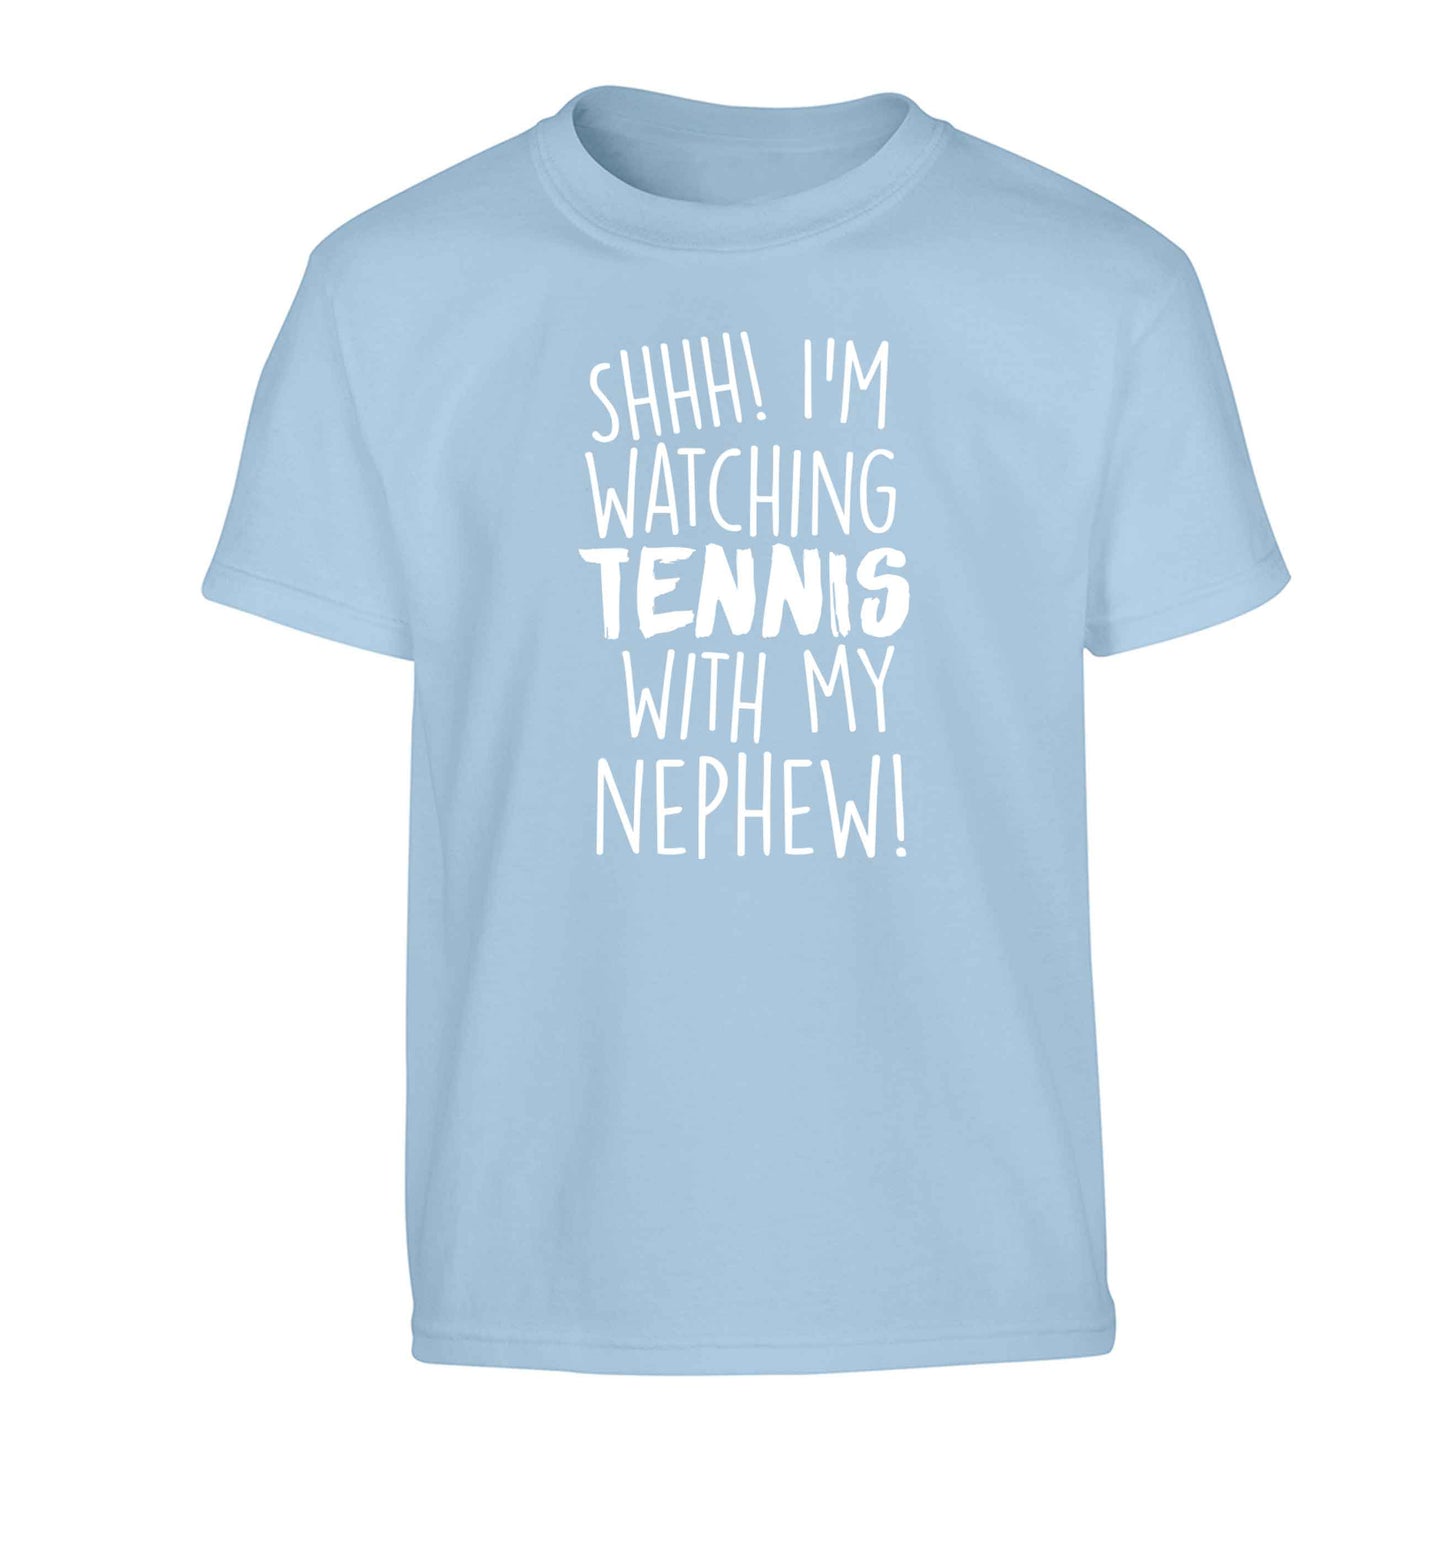 Shh! I'm watching tennis with my nephew! Children's light blue Tshirt 12-13 Years